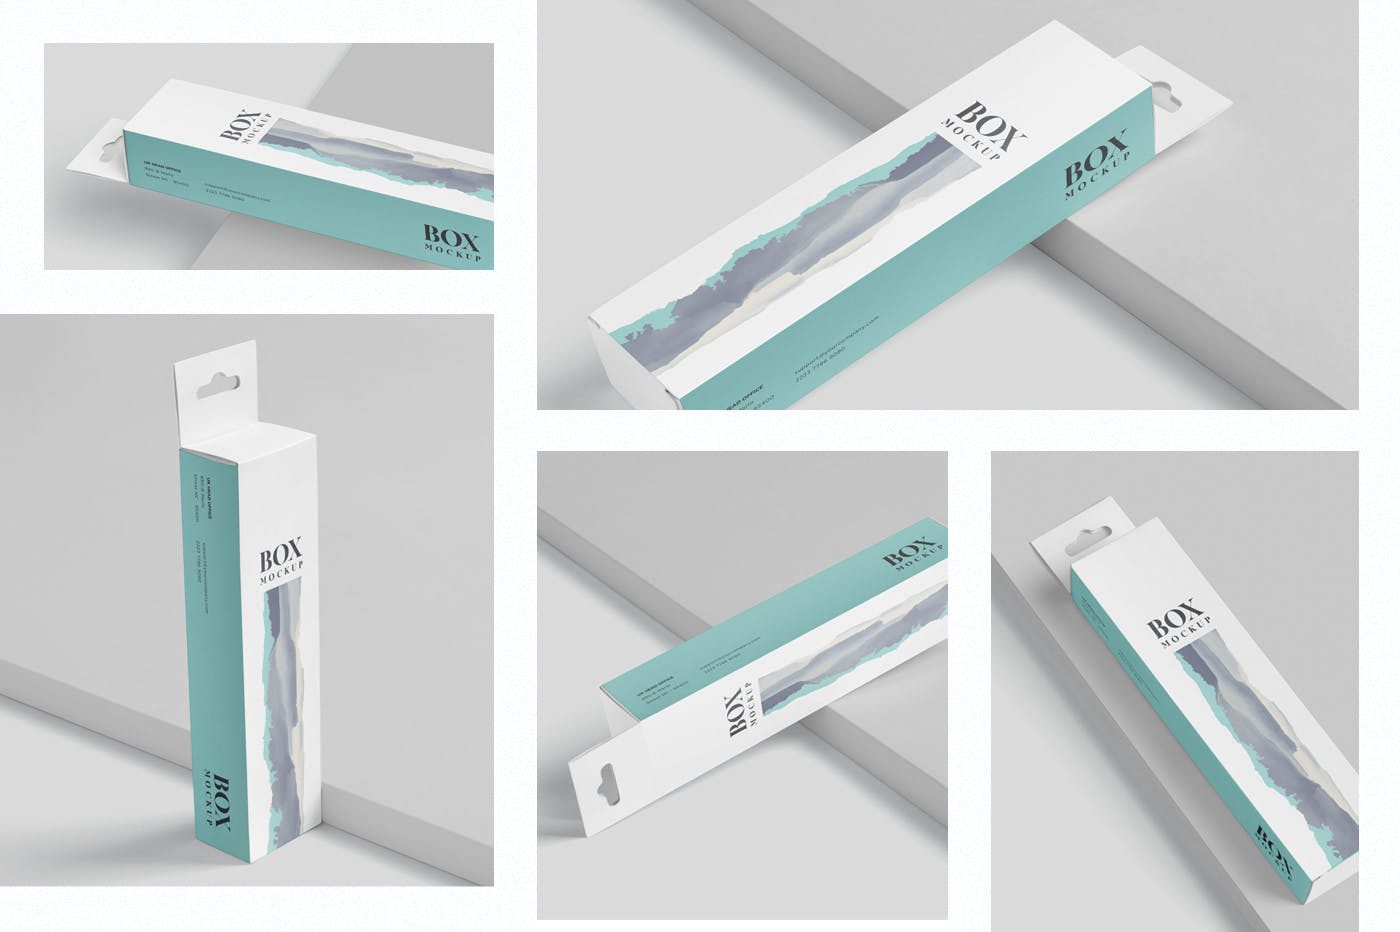 超薄矩形长条包装盒外观设计效果图素材中国精选 Box Mockup PSDs – High Slim Rectangle Size Hanger插图(1)